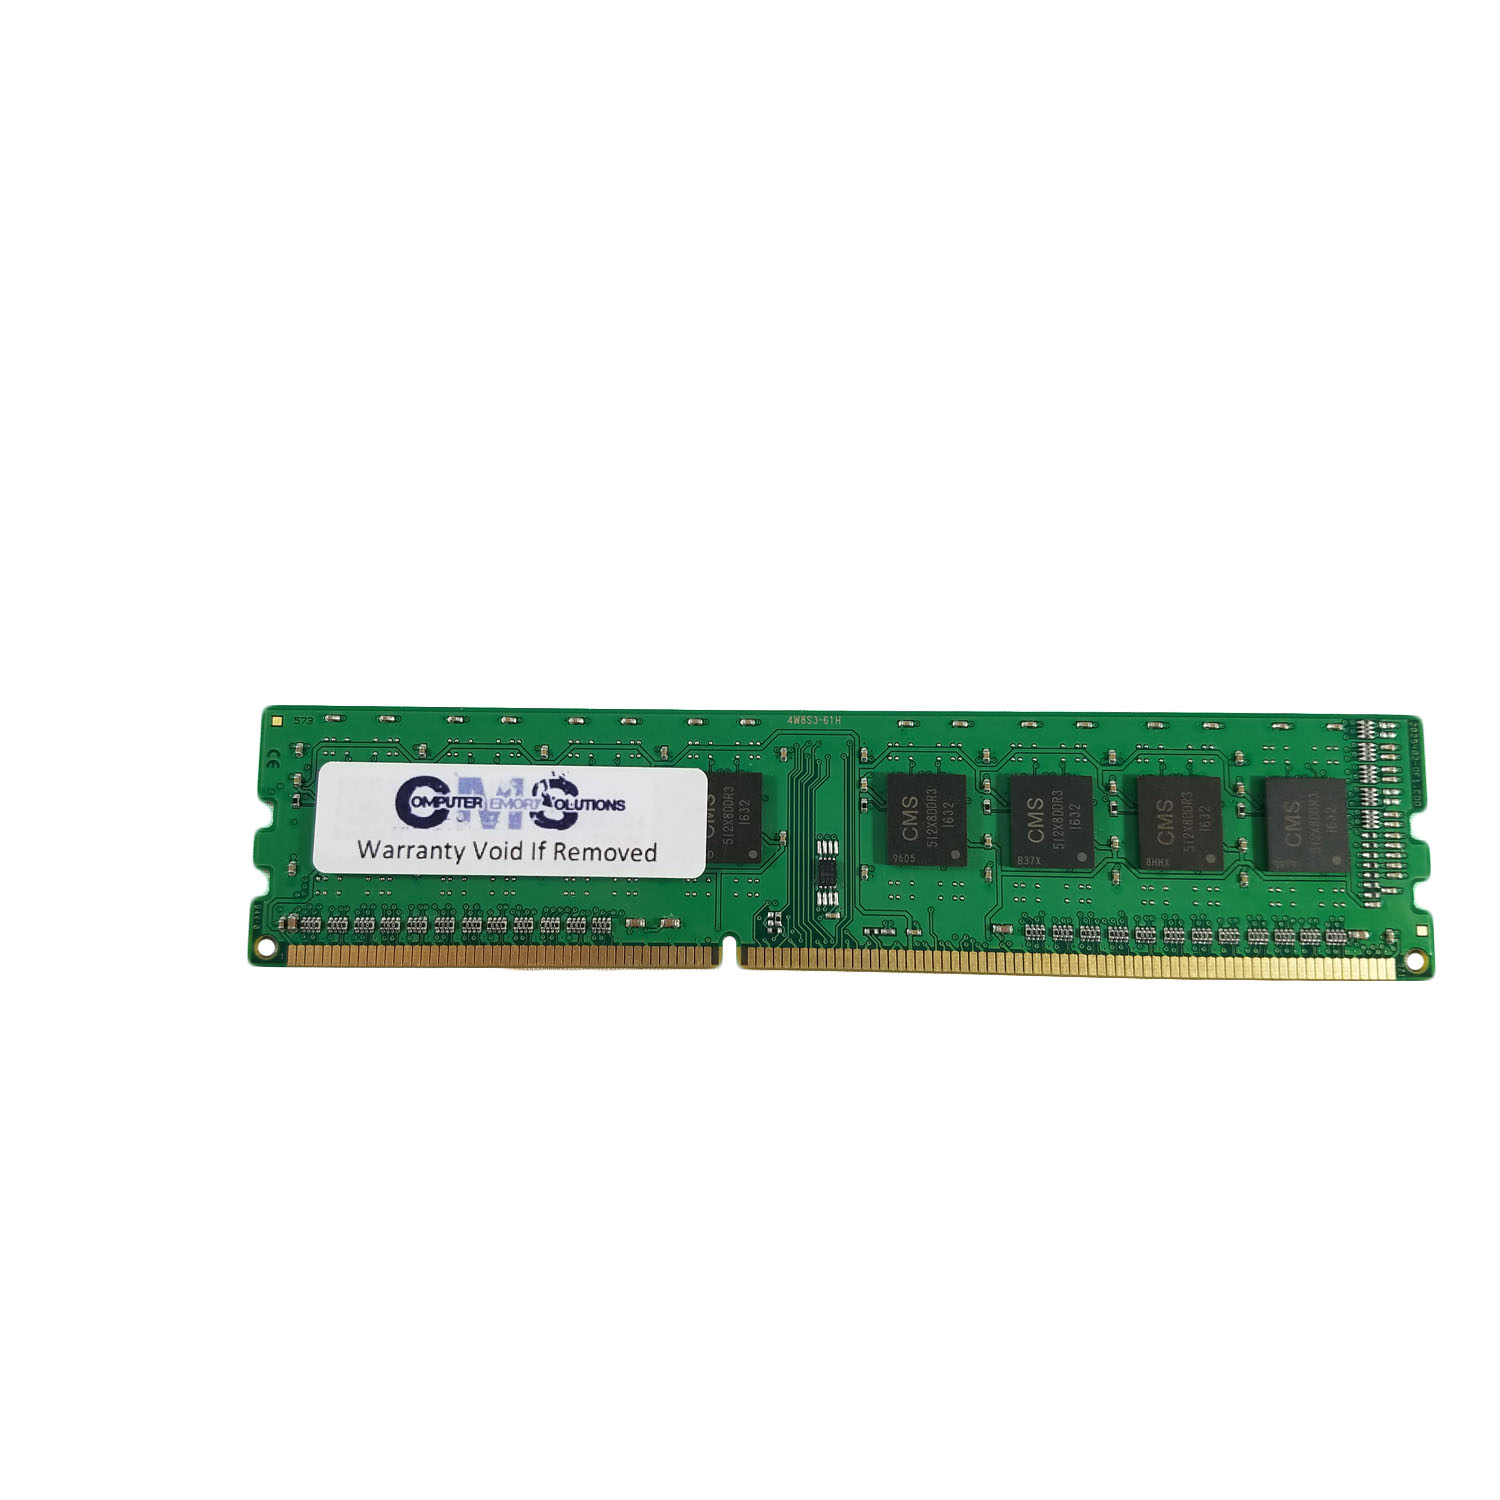 2022新生活 CMS 8GB (1X8GB) DDR3 12800 1600MHz Non ECC SODIMM Memory Ram  Upgrade Compatible with HP/Compaq? Notebook 15-D054Nr, 15-D056Nr,  15-D057Nr, 15-D058Nr メモリー